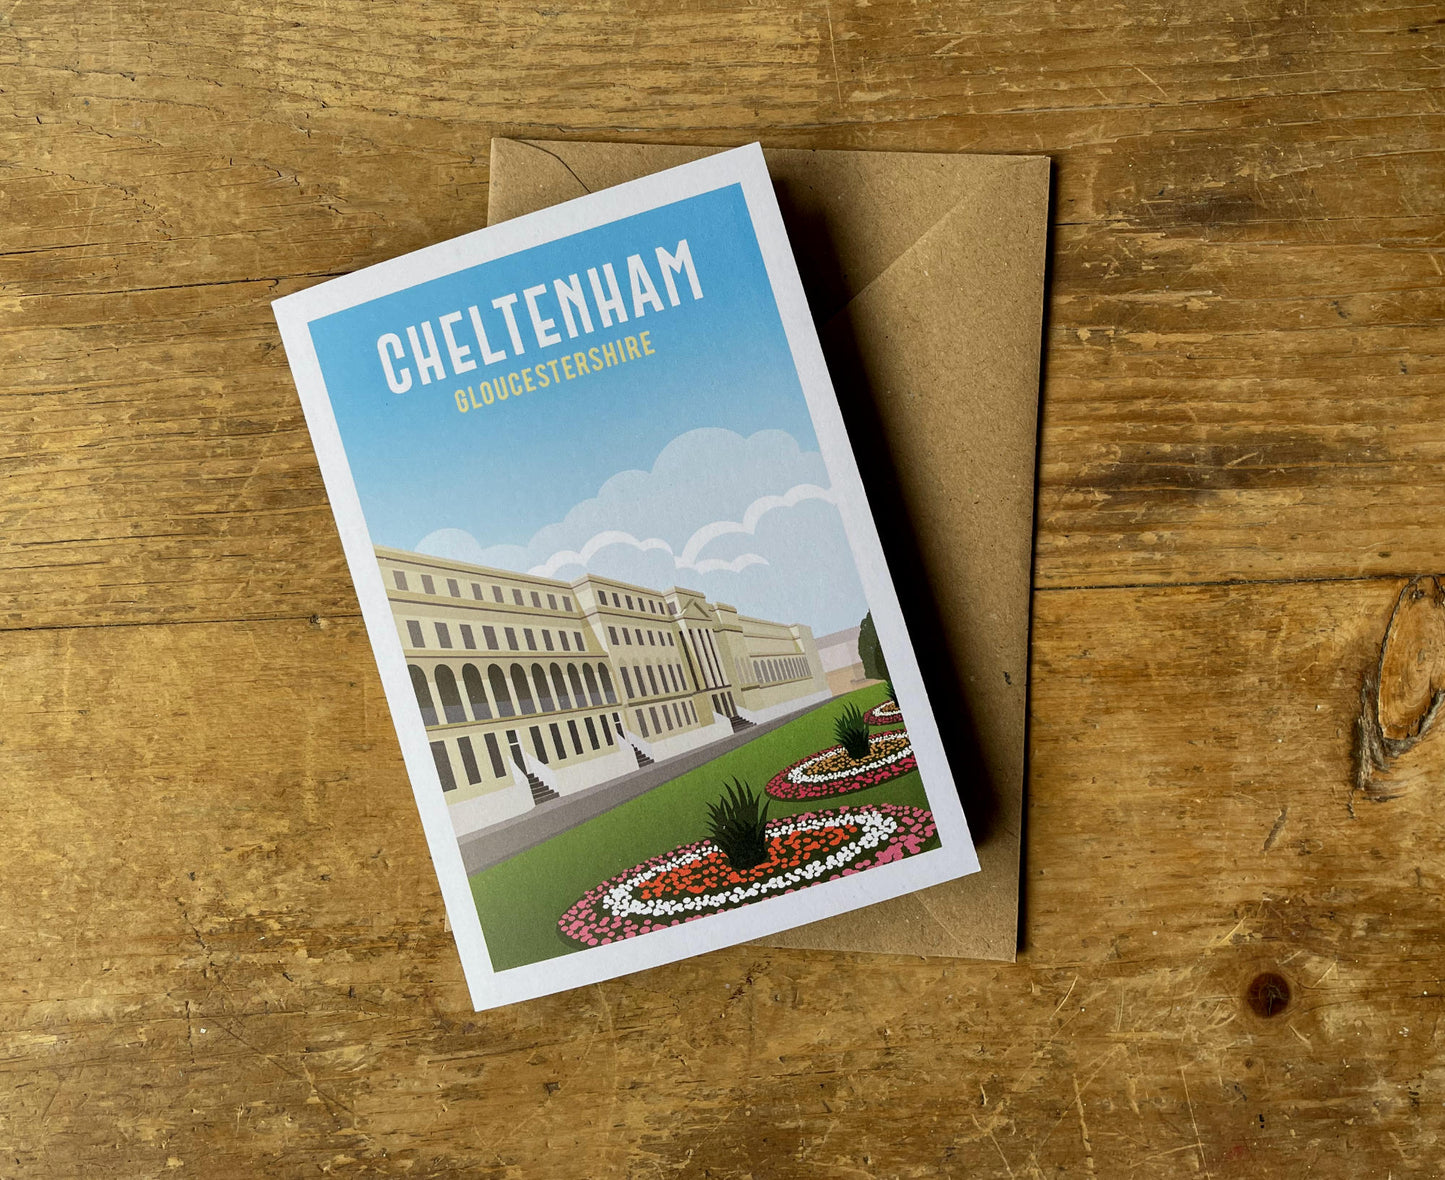 Cheltenham Greeting Card on desk